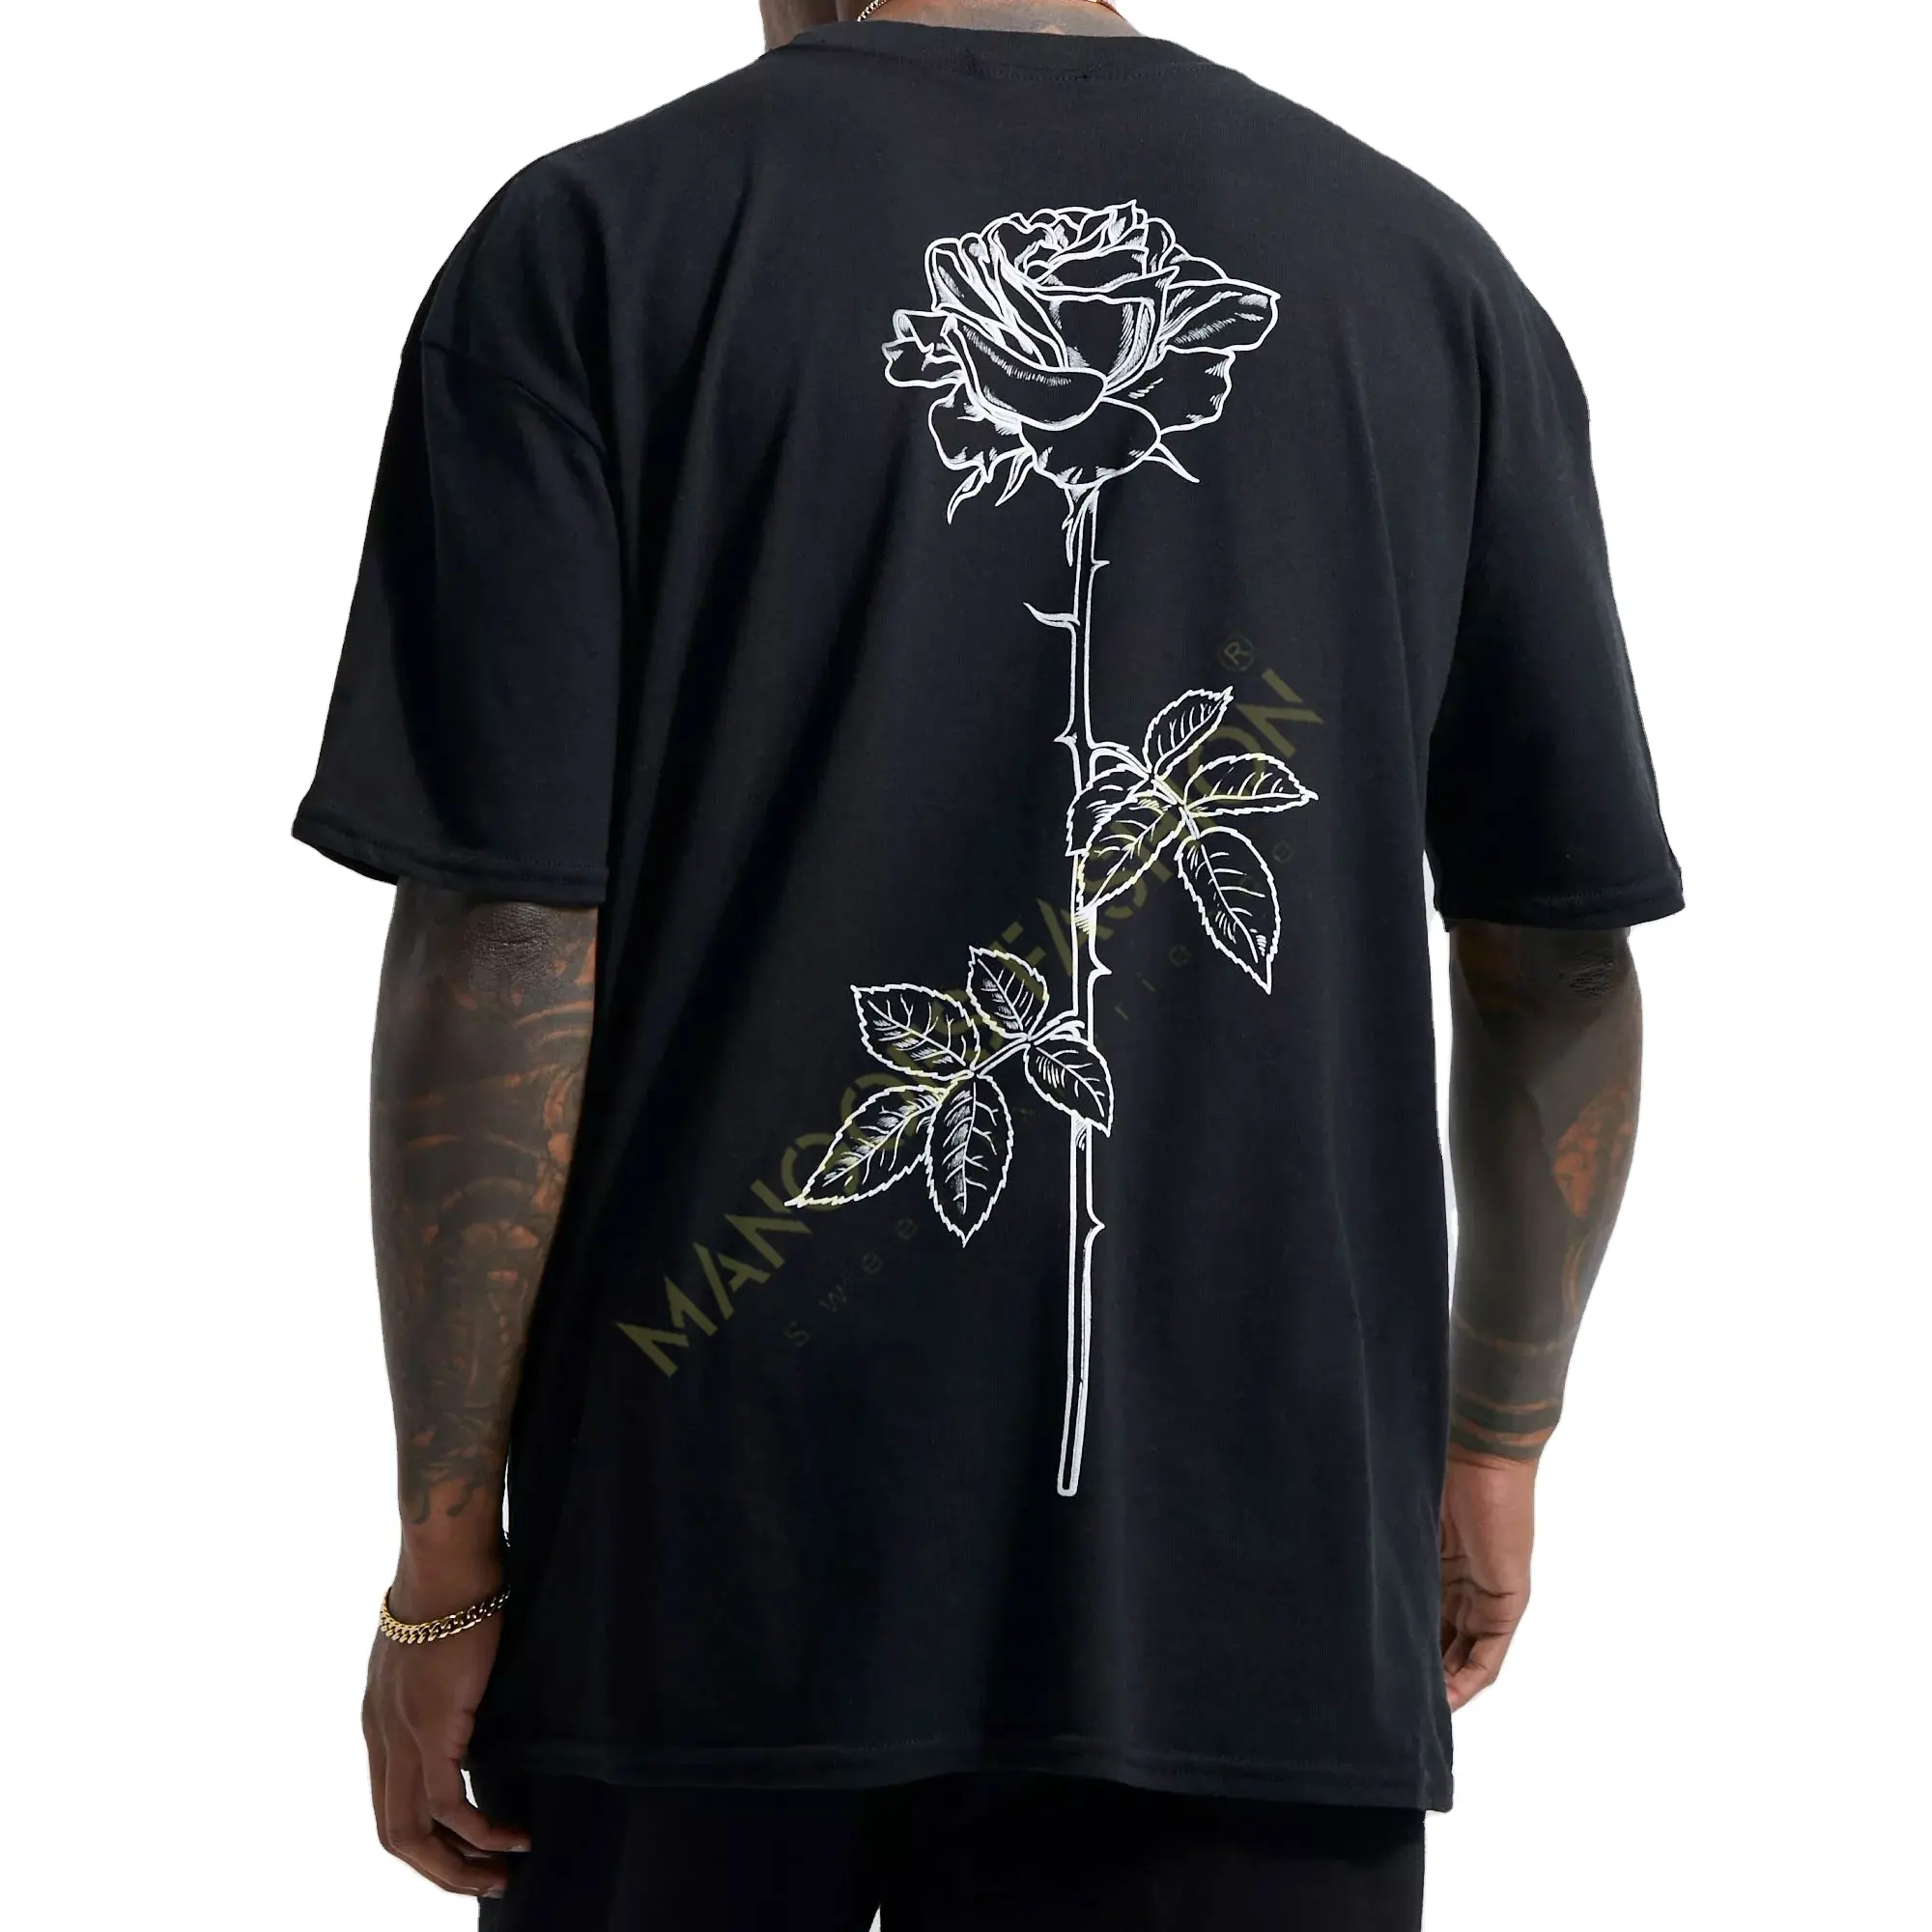 T-shirt graphique personnalisable pour homme: impression de tige de rose tracée sur noir | Personnalisez votre style grossistes